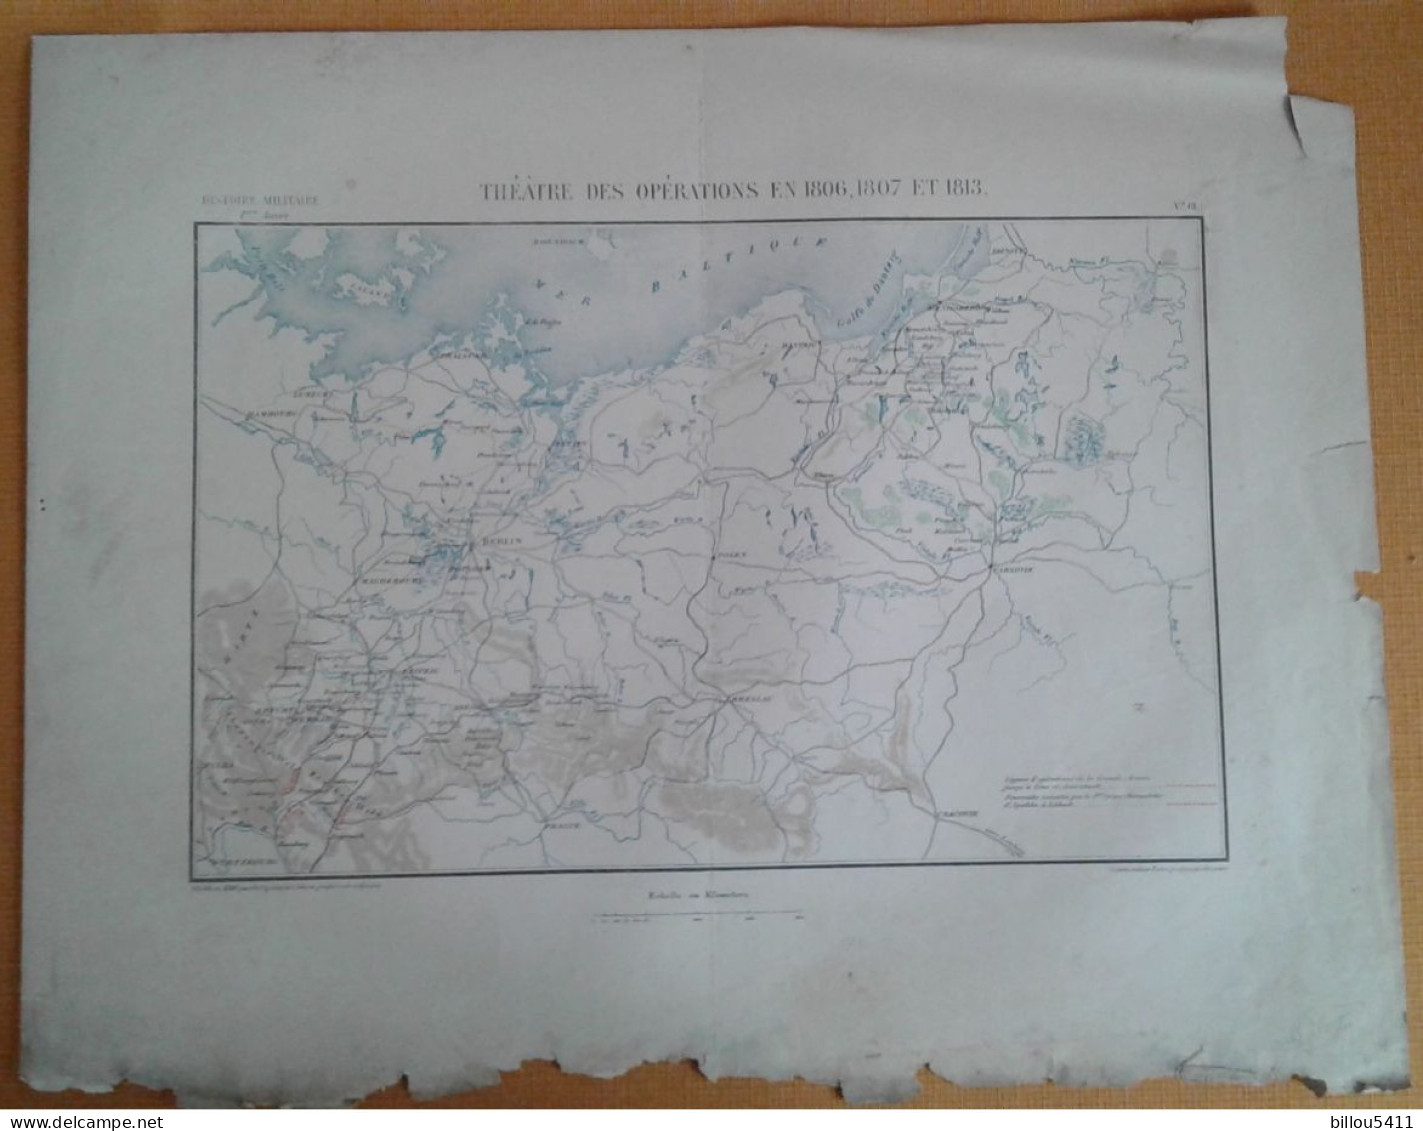 Carte  Histoire Militaire à Iéna Et Auerstaedt 1806/07/13 LUBECK ; BERLIN; LEIPZIG  Ech: En Kilométres - Topographical Maps